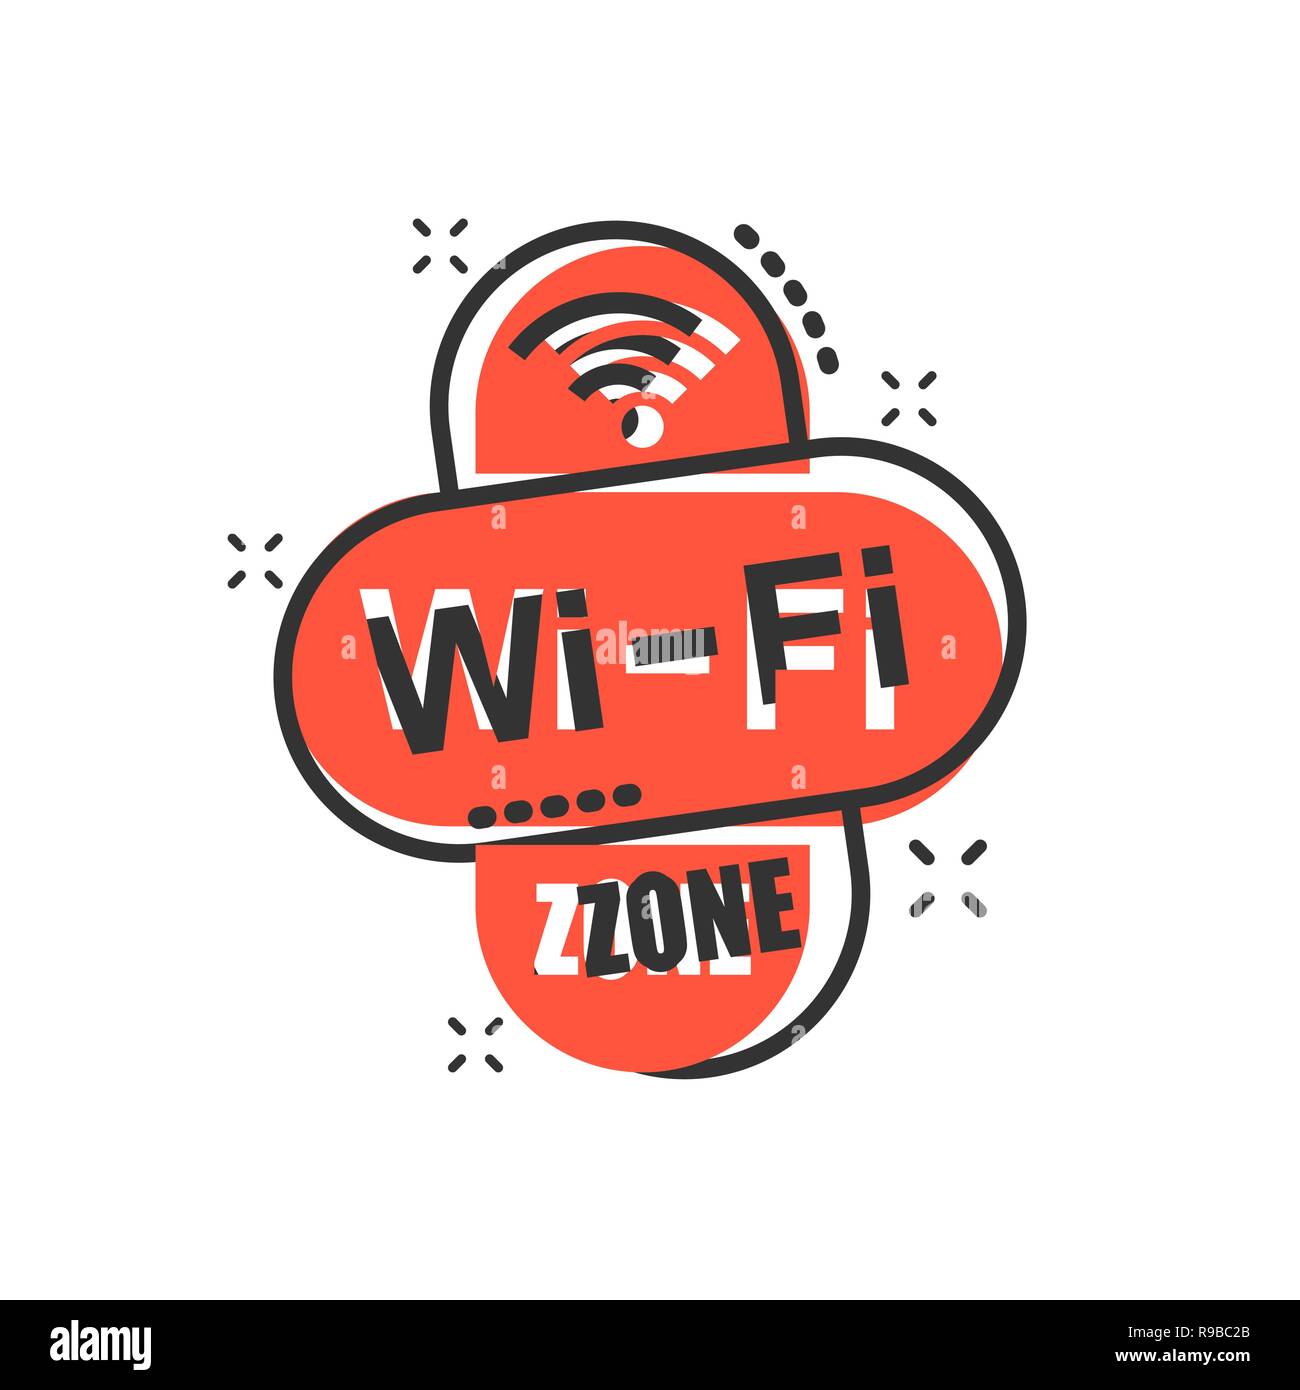 Area Wifi icona in stile fumetto. Wi-fi tecnologia wireless vettore illustrazione cartoon pittogramma. Rete wifi concetto aziendale effetto splash. Illustrazione Vettoriale